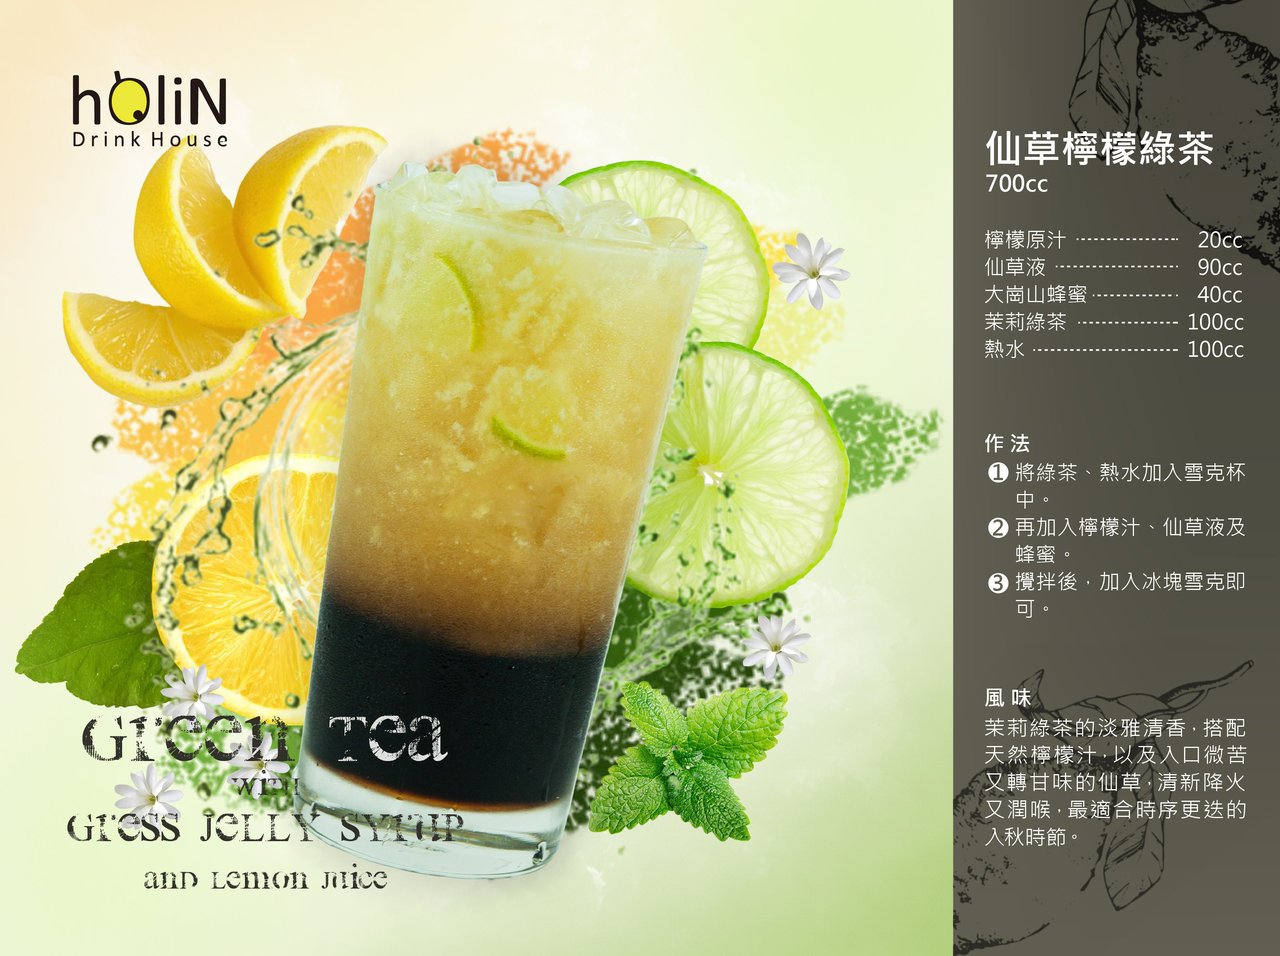 仙草柠檬绿茶 - 